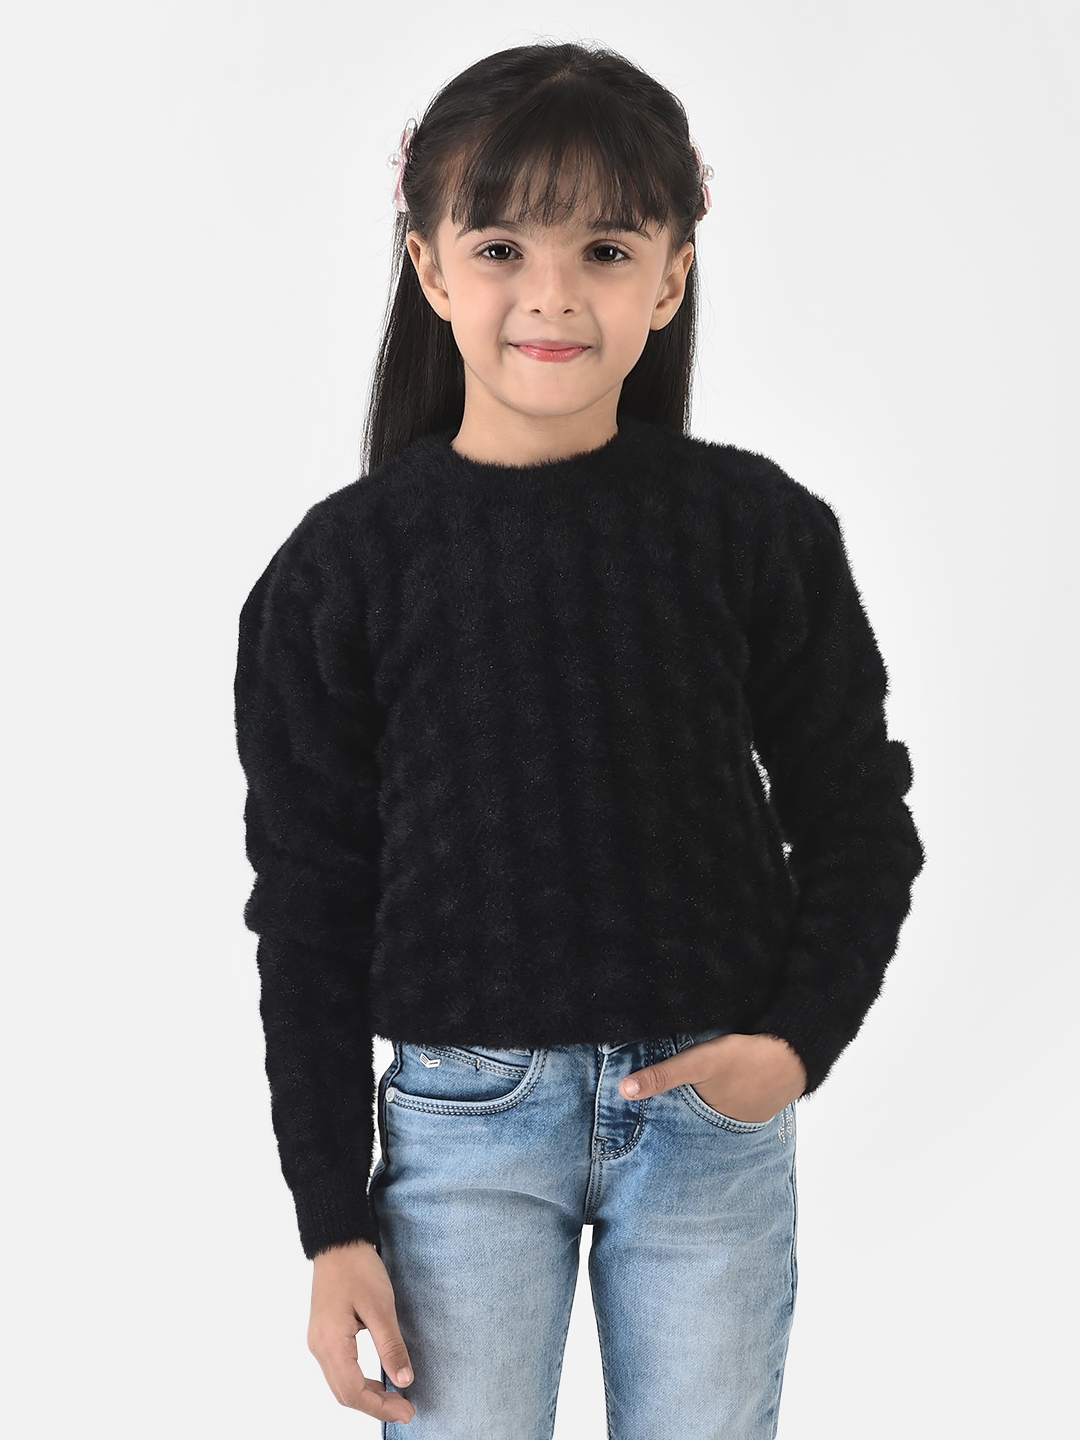 Crimsoune Club Girls Black Sweater in Self-Designed Print